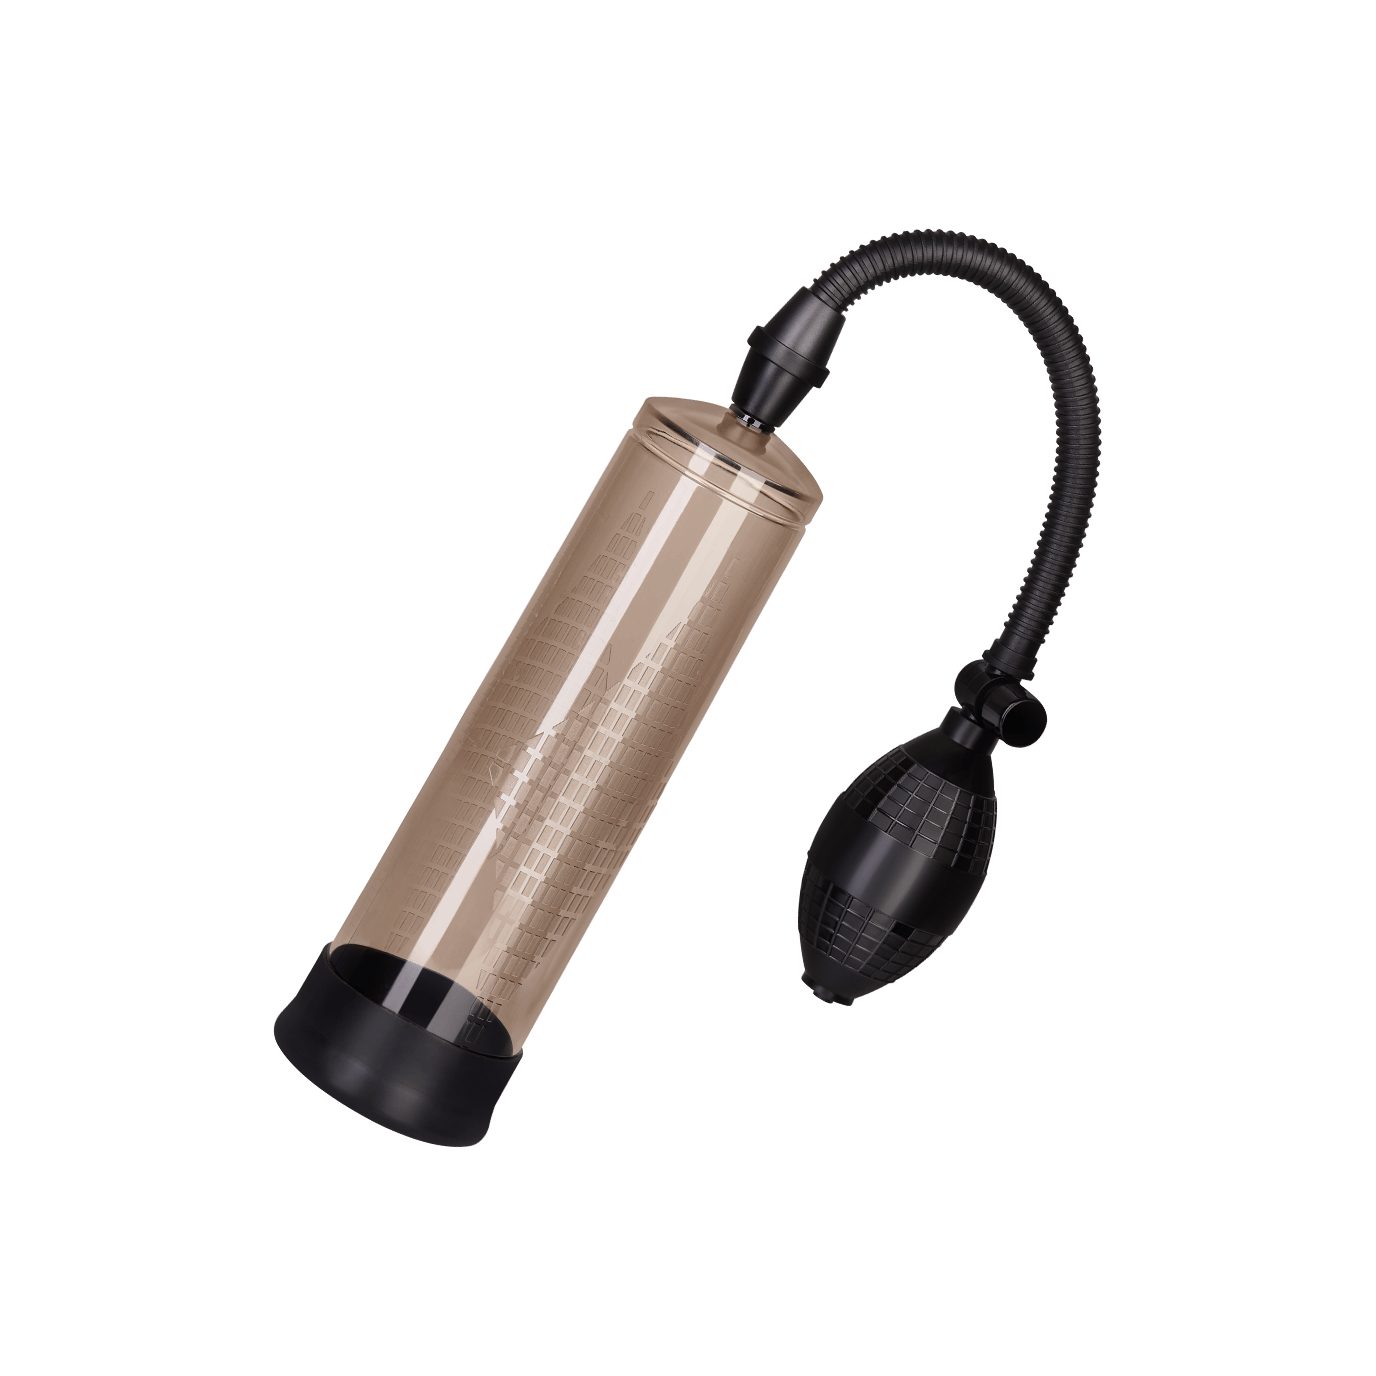 EIS Eichel-Masturbator EIS Elektrische Penispumpe mit Silikon-Manschette, Handpumpe, 24cm, prallere Erektion; praktische Handpumpe schwarz